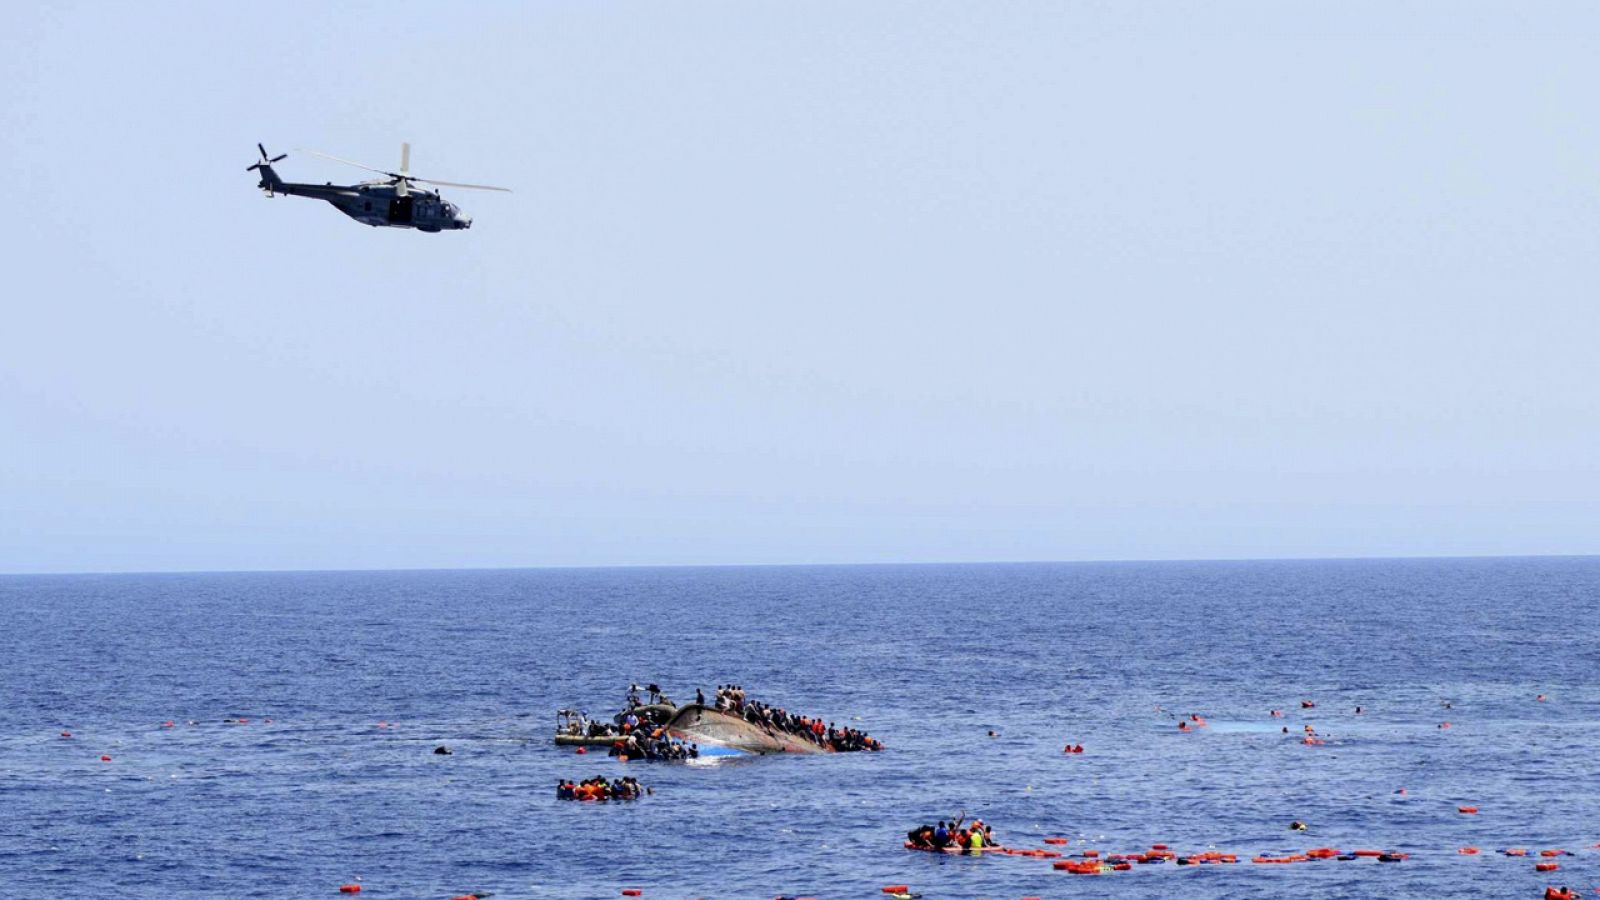 Rescate por la Marina italiana del naufragio sucedido el 25 de mayo frente a la costa Libia